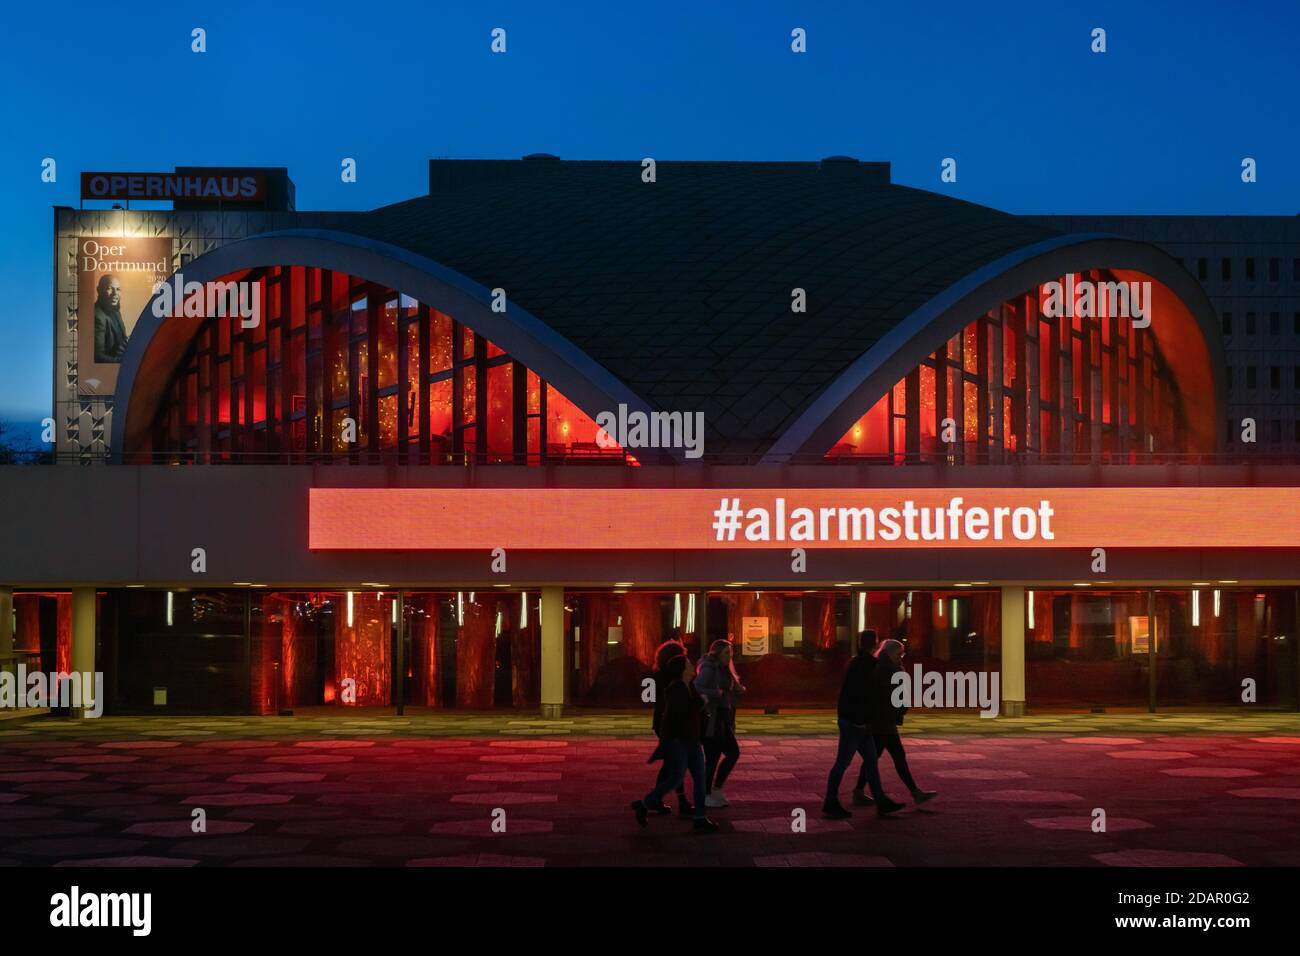 Dortmund, 14.11.2020: Das wegen der Coronakrise geschlossene Teatro Dortmund erleuchtet in roten Farben. Damit schließt es sich dem Aktionsbündnis '#alarmstuferot' an, das auf die not der Spielstäten hinweist. Der Vorstellungsbetrieb des Theatre Dortmund ist ab dem 2.11. Bis zum 30. Noviembre (vorläufig) eingestellt. Foto de stock